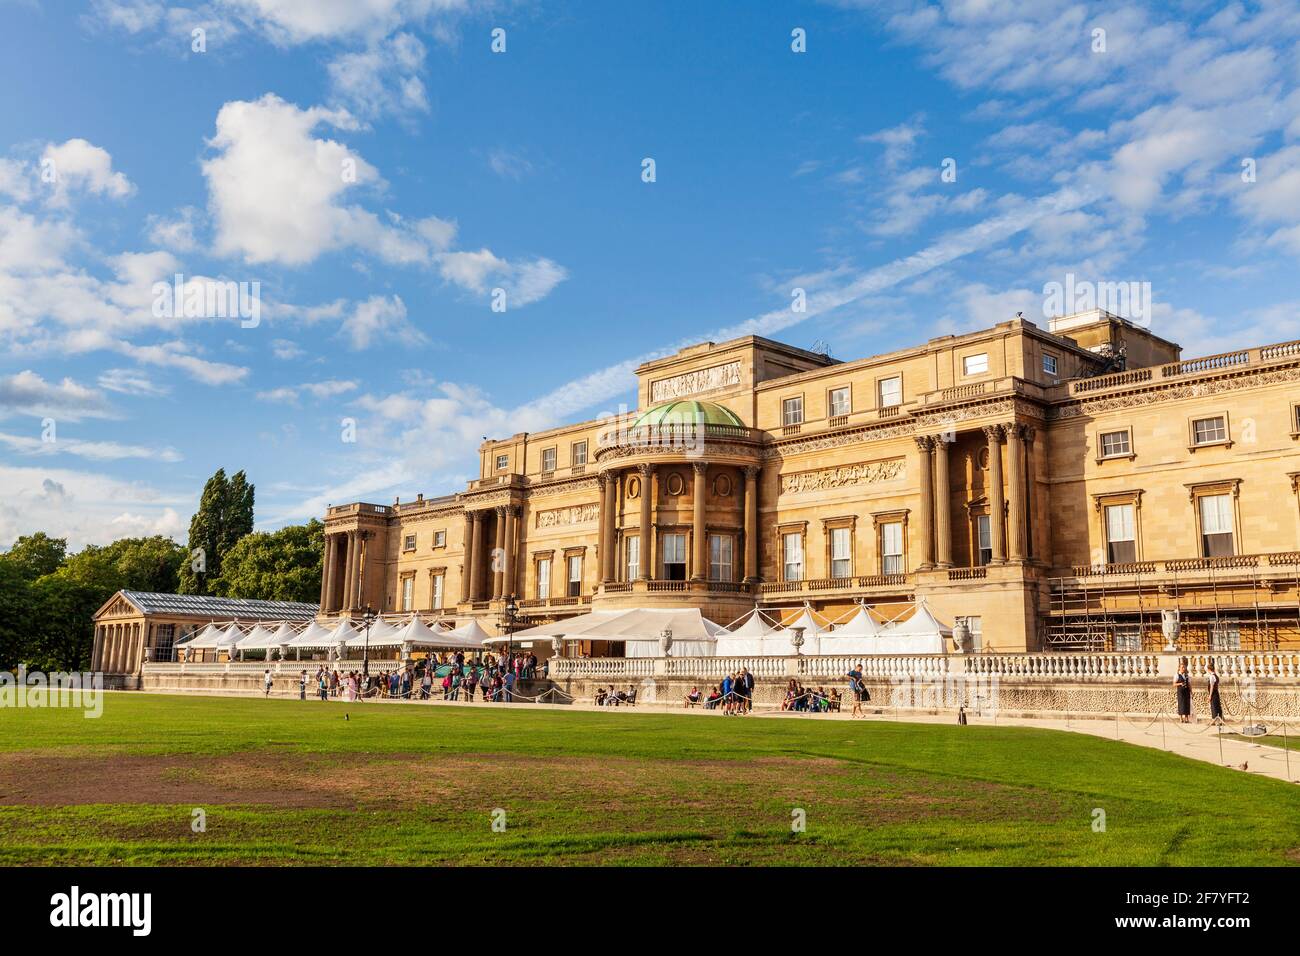 La terrasse arrière du palais de Buckingham, Londres, Angleterre Banque D'Images